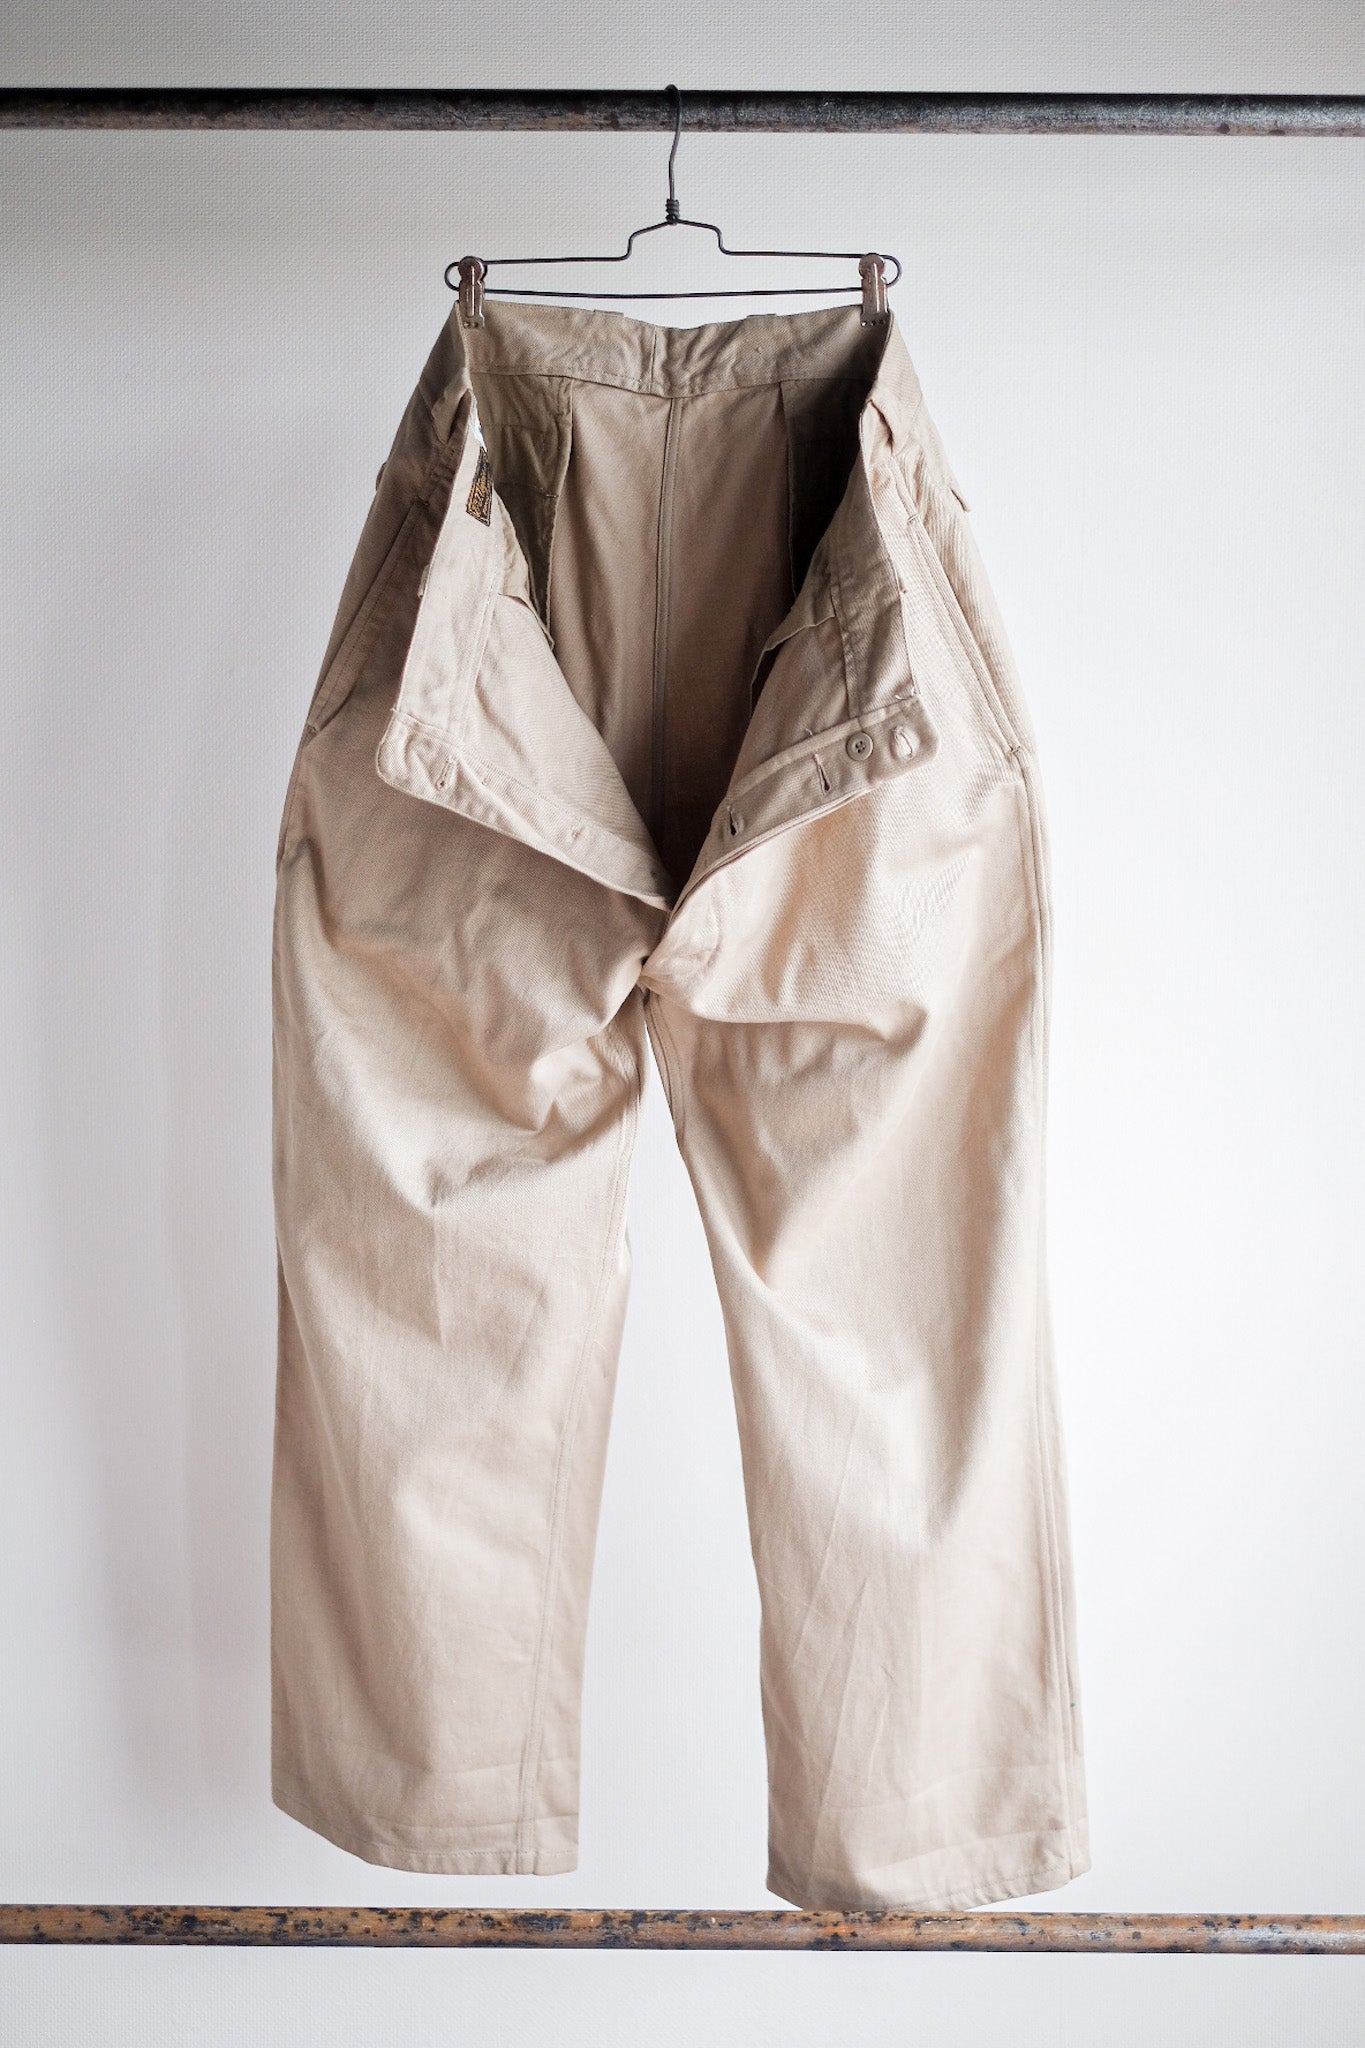 [〜60年代]法國陸軍M52 Chino褲子的大小。16“死股”